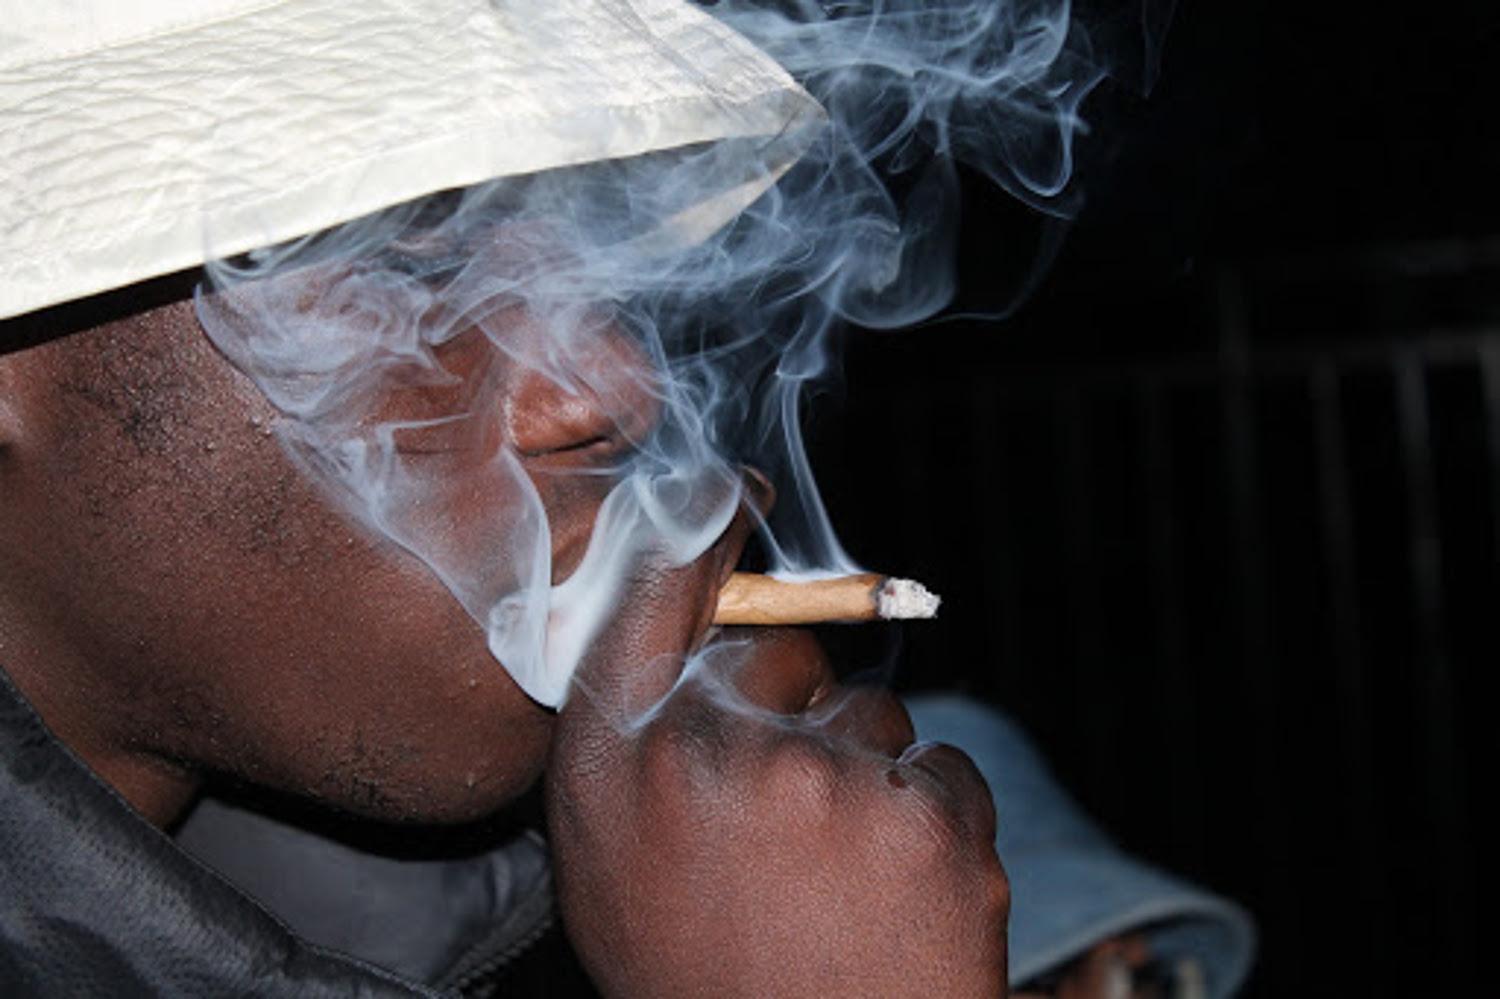 Sikasso : la consommation de drogue par les jeunes inquiète les autorités régionales